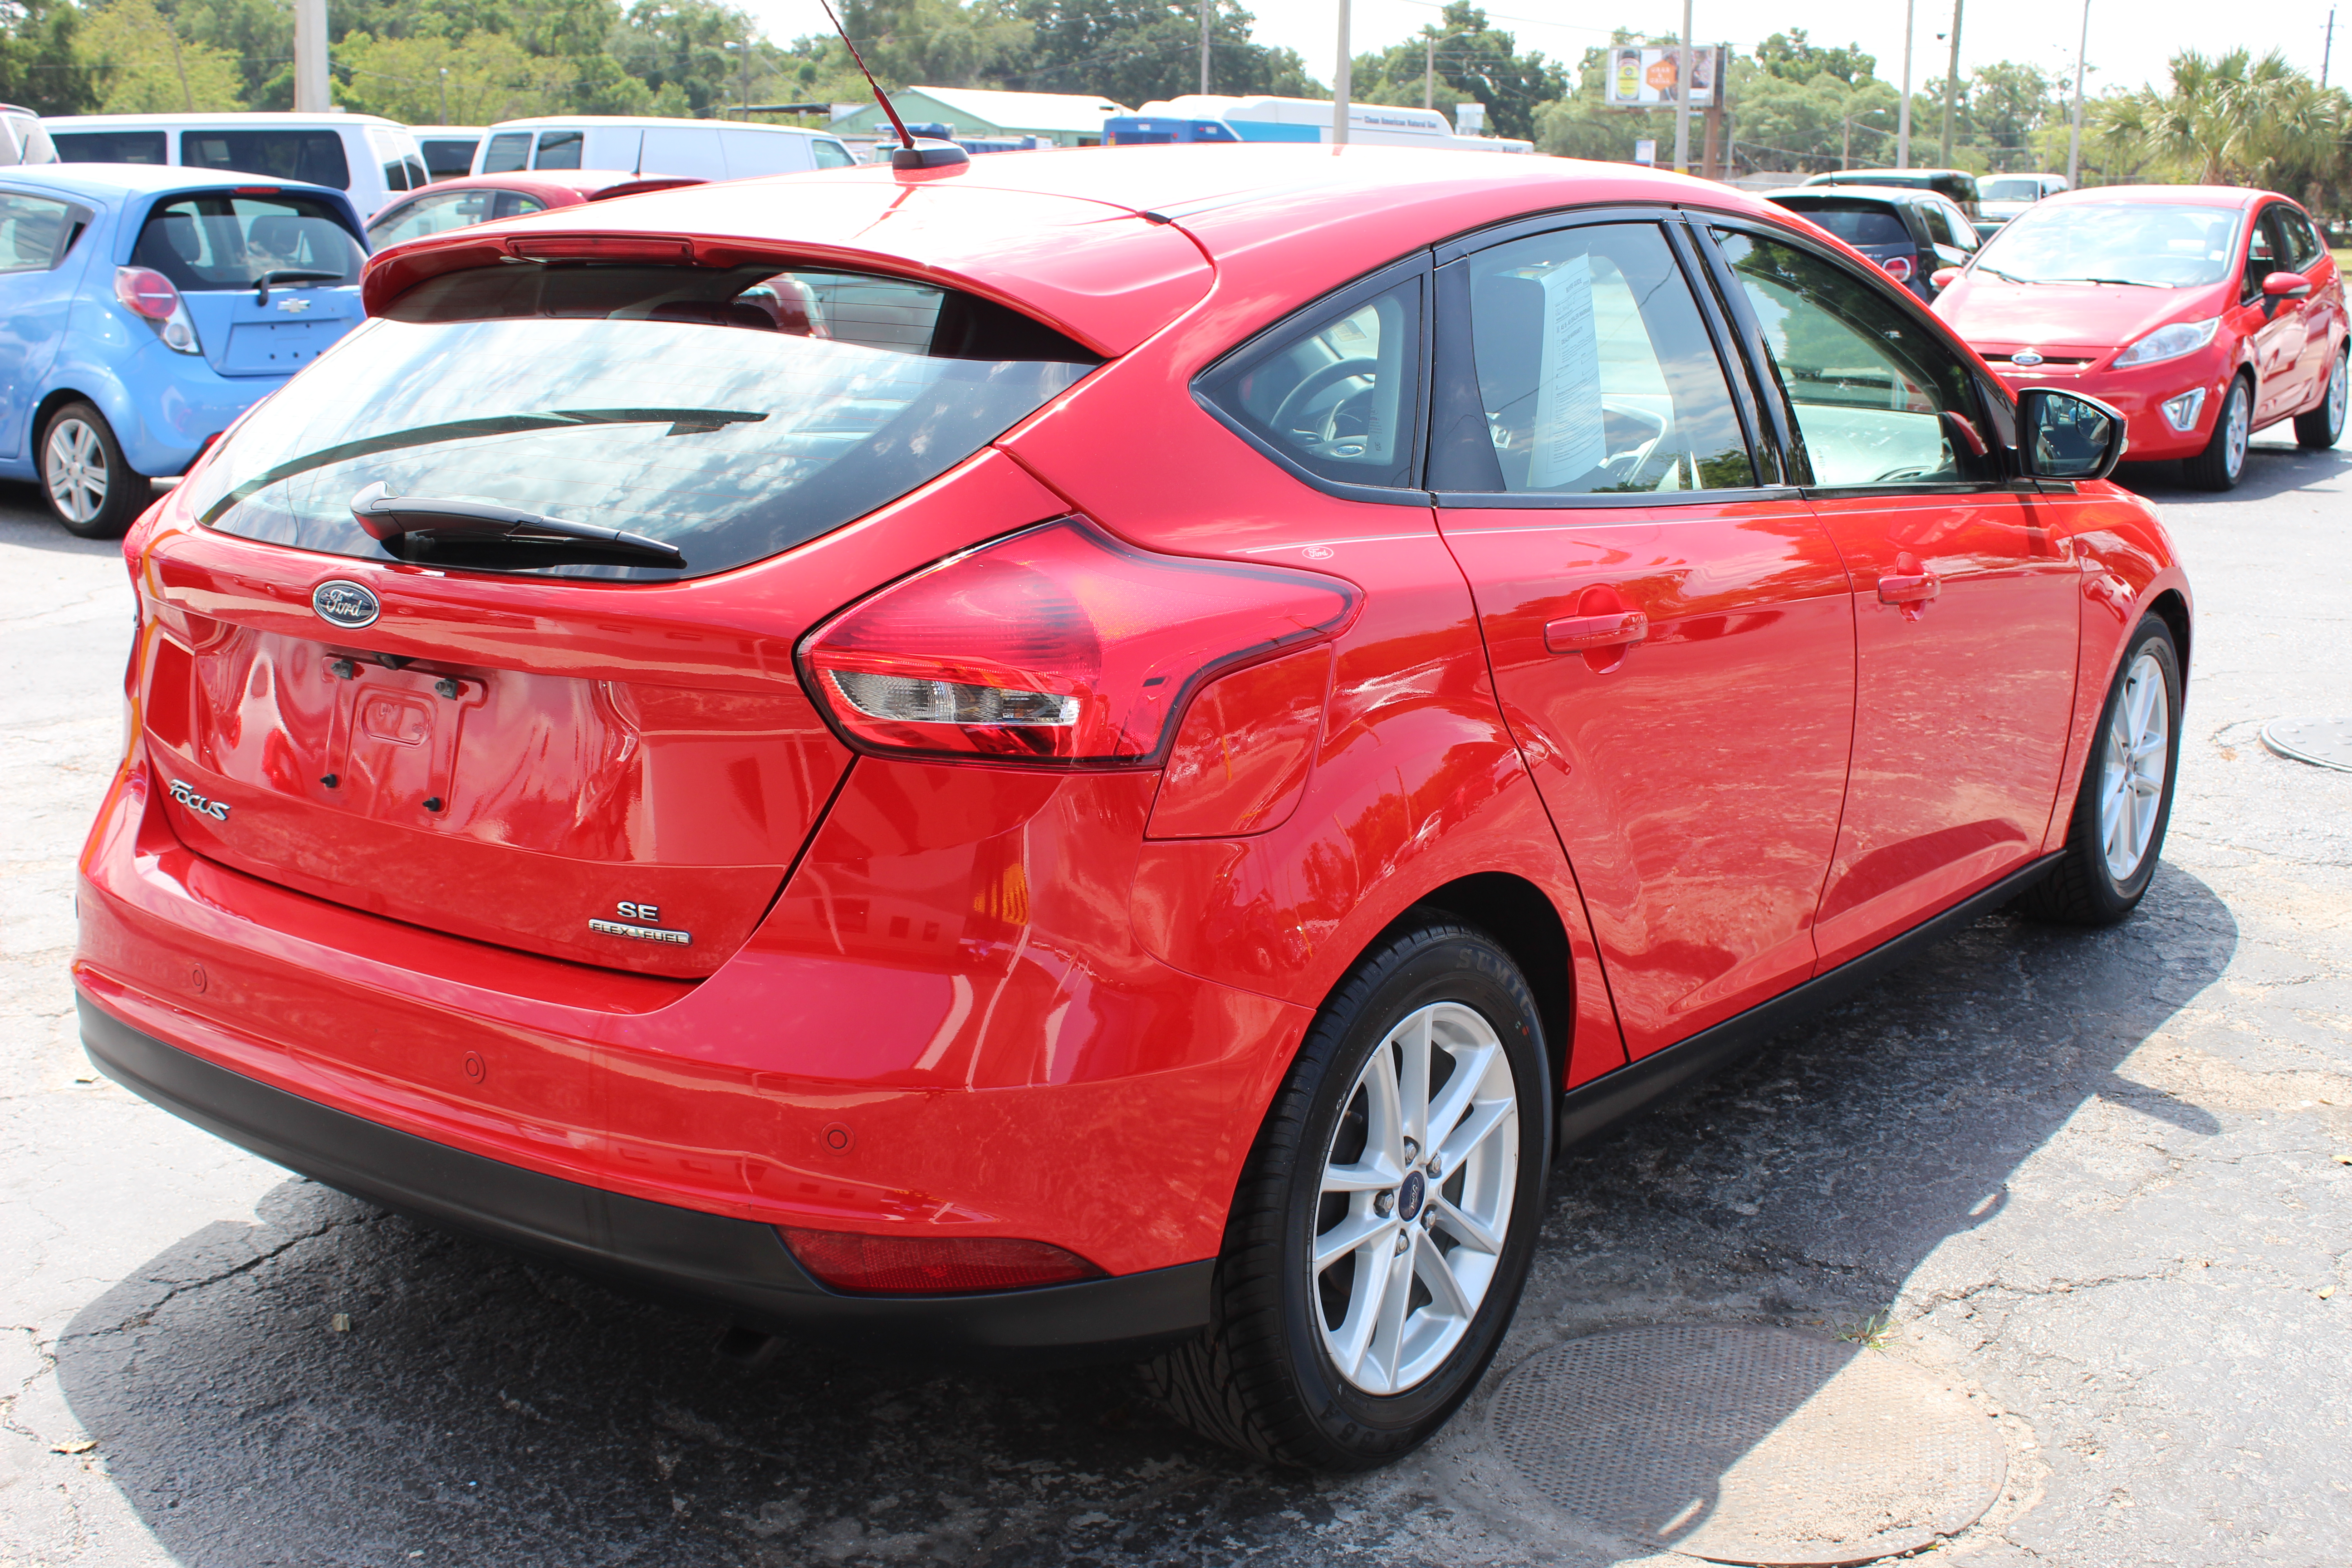 Pre-Owned 2015 Ford Focus SE Hatchback 4 Dr. in Tampa #0801 | Car ...